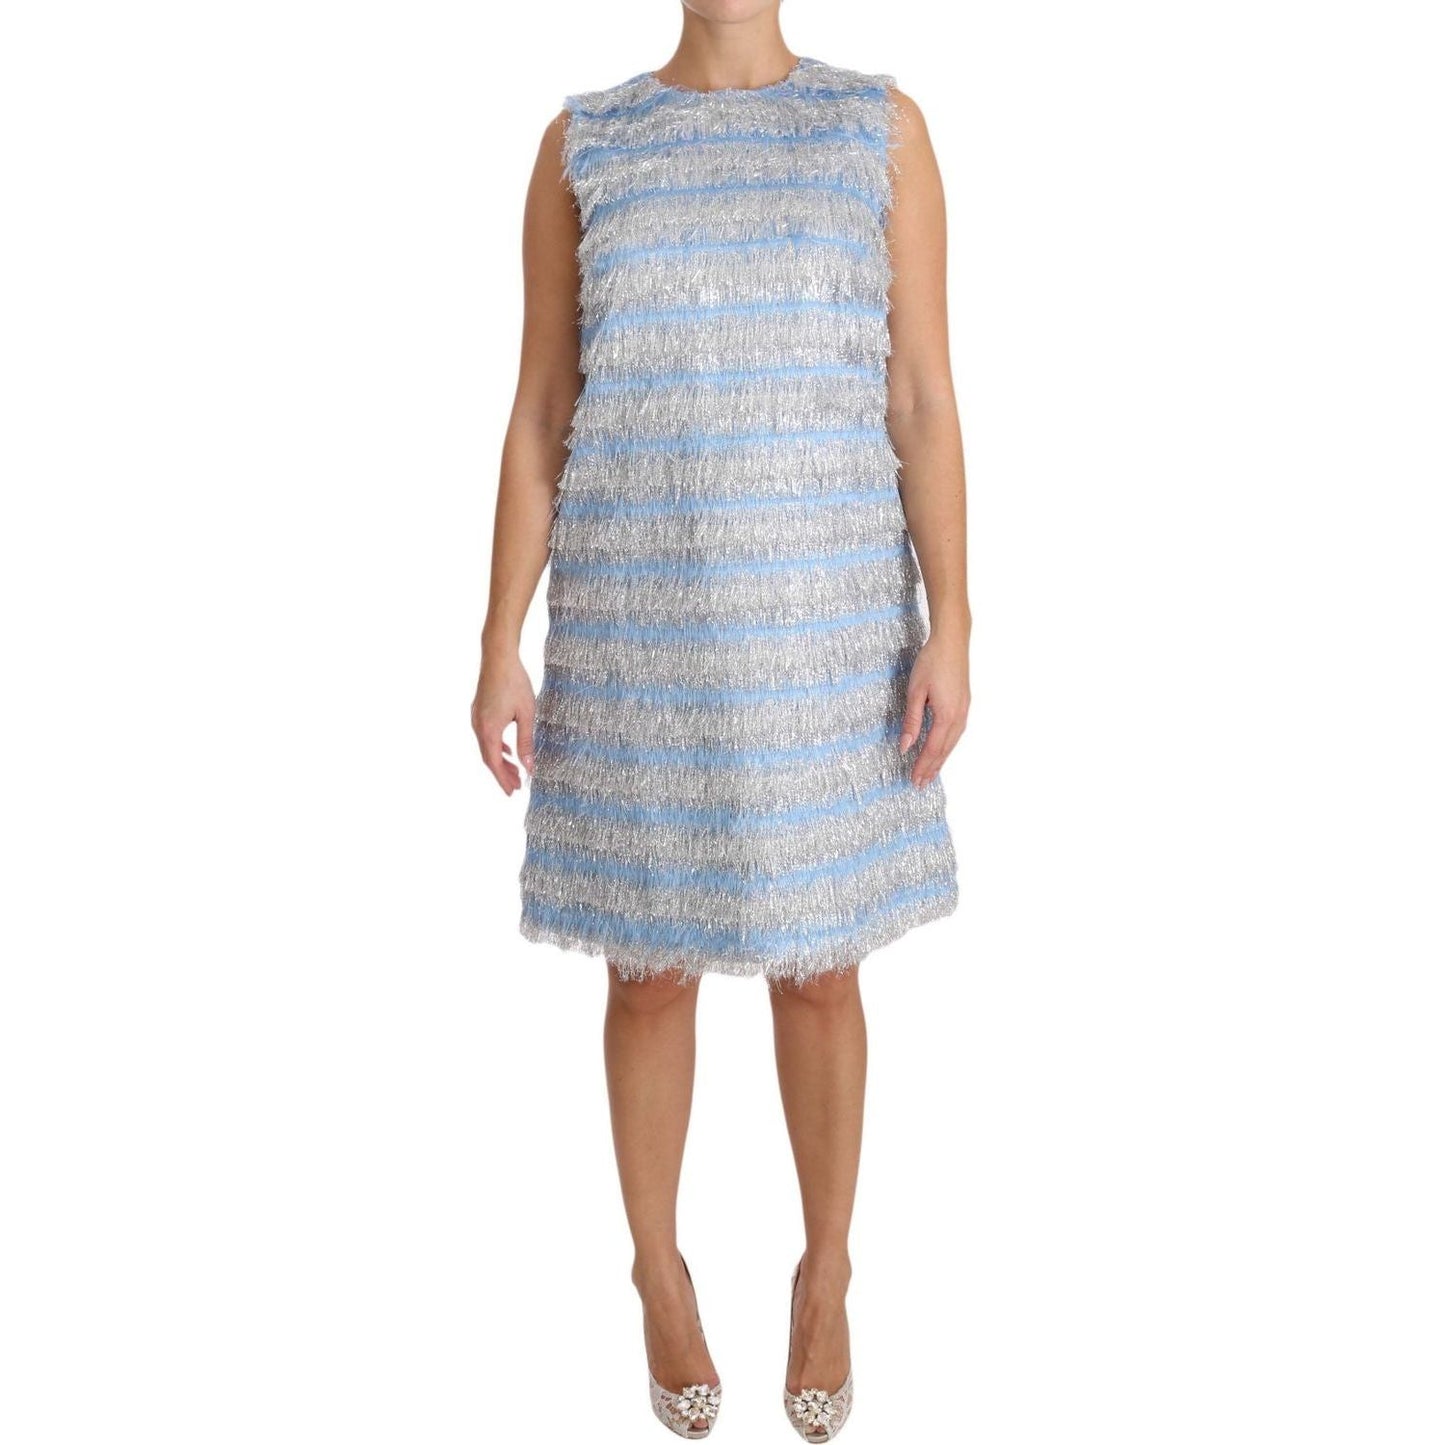 Dolce & Gabbana | Light Blue Silver Shift Gown Dress | McRichard Designer Brands